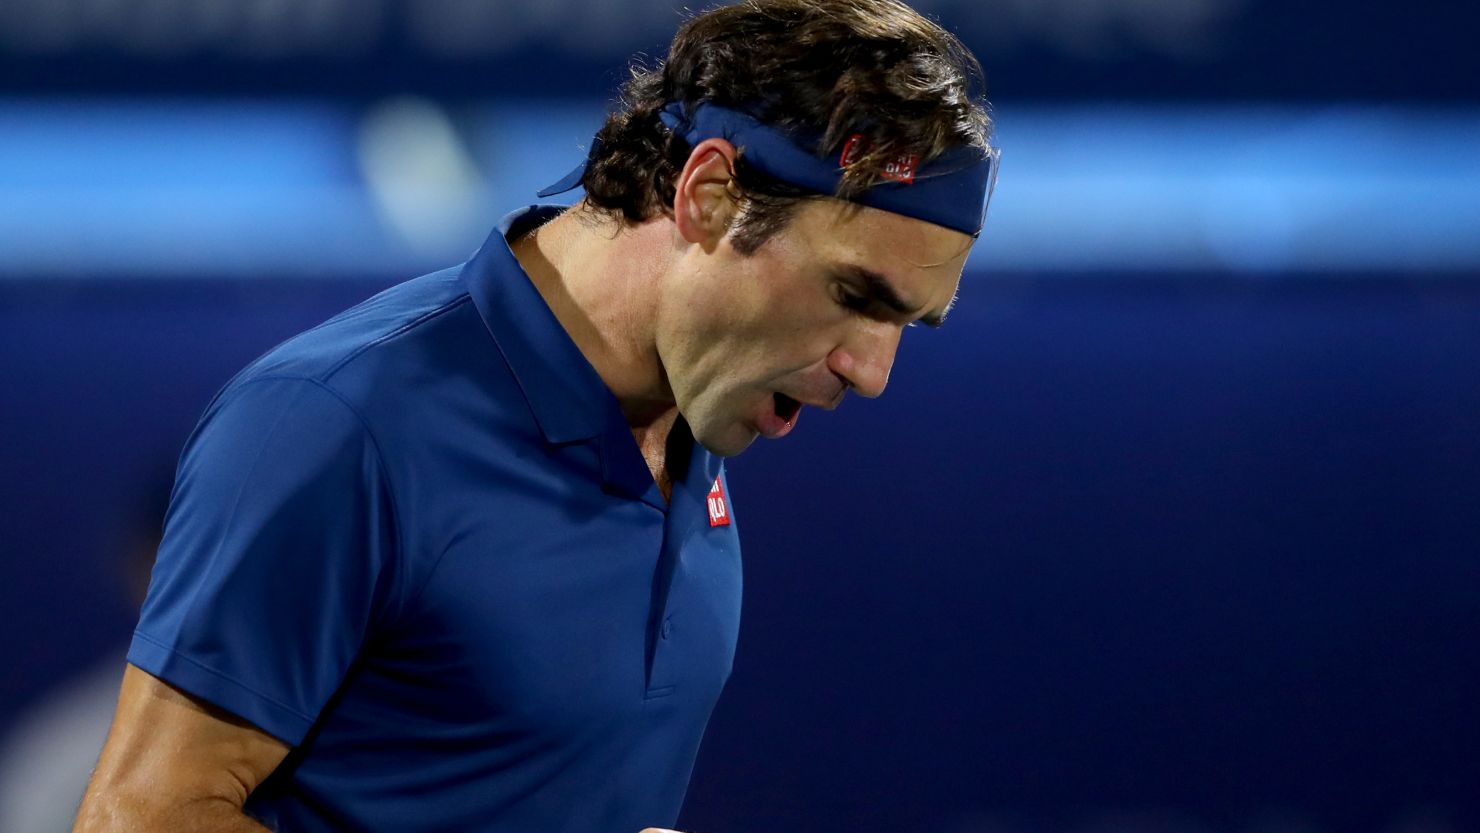 Roger Federer wins Dubai championships for 100th career title, Tennis